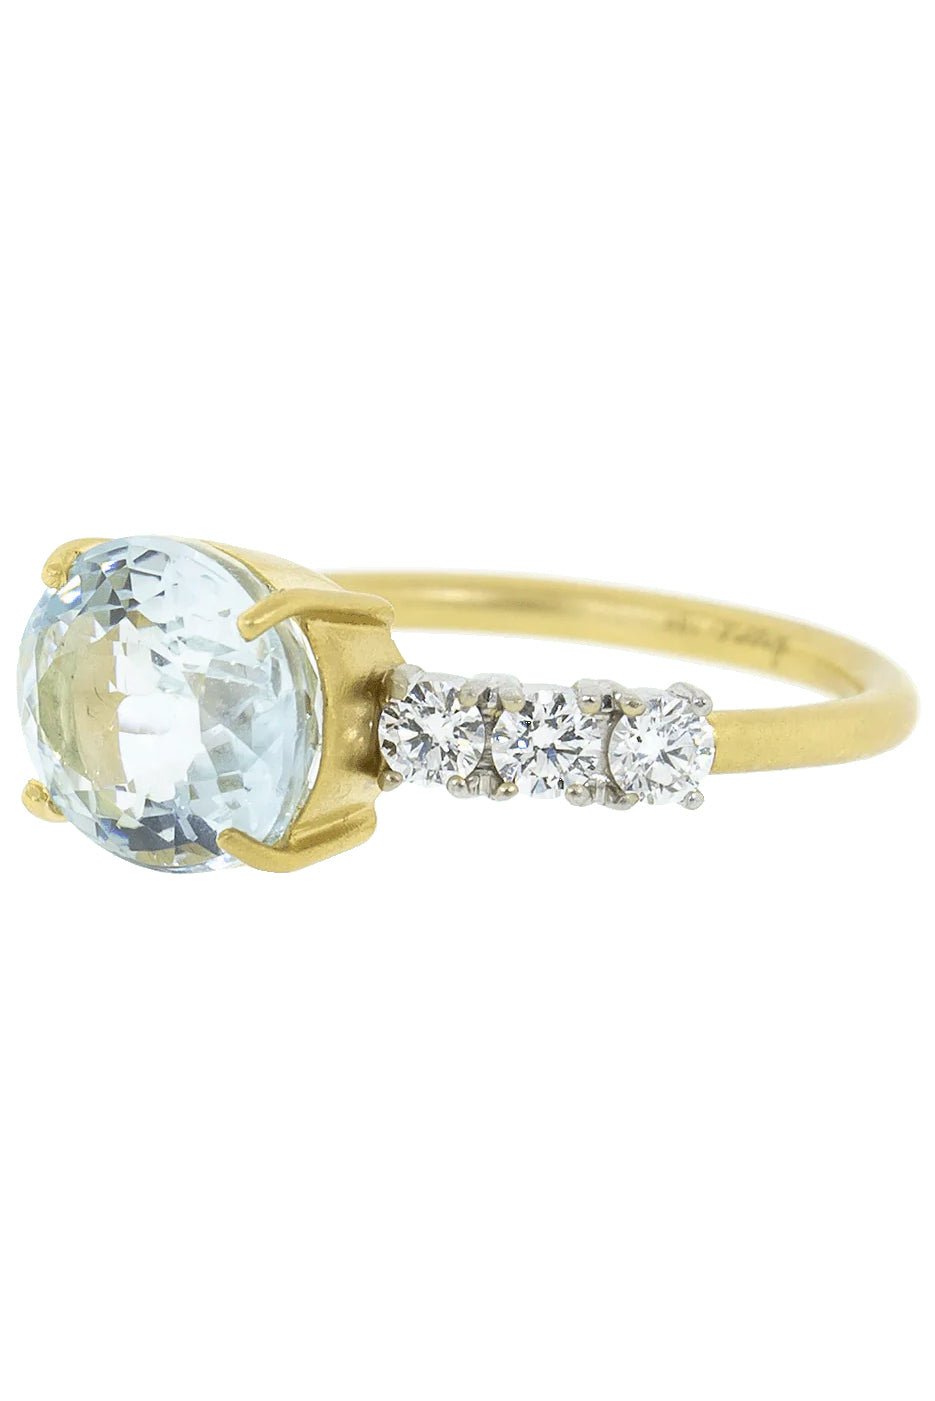 IRENE NEUWIRTH JEWELRY-Aquamarine and Diamond Ring-YELLOW GOLD